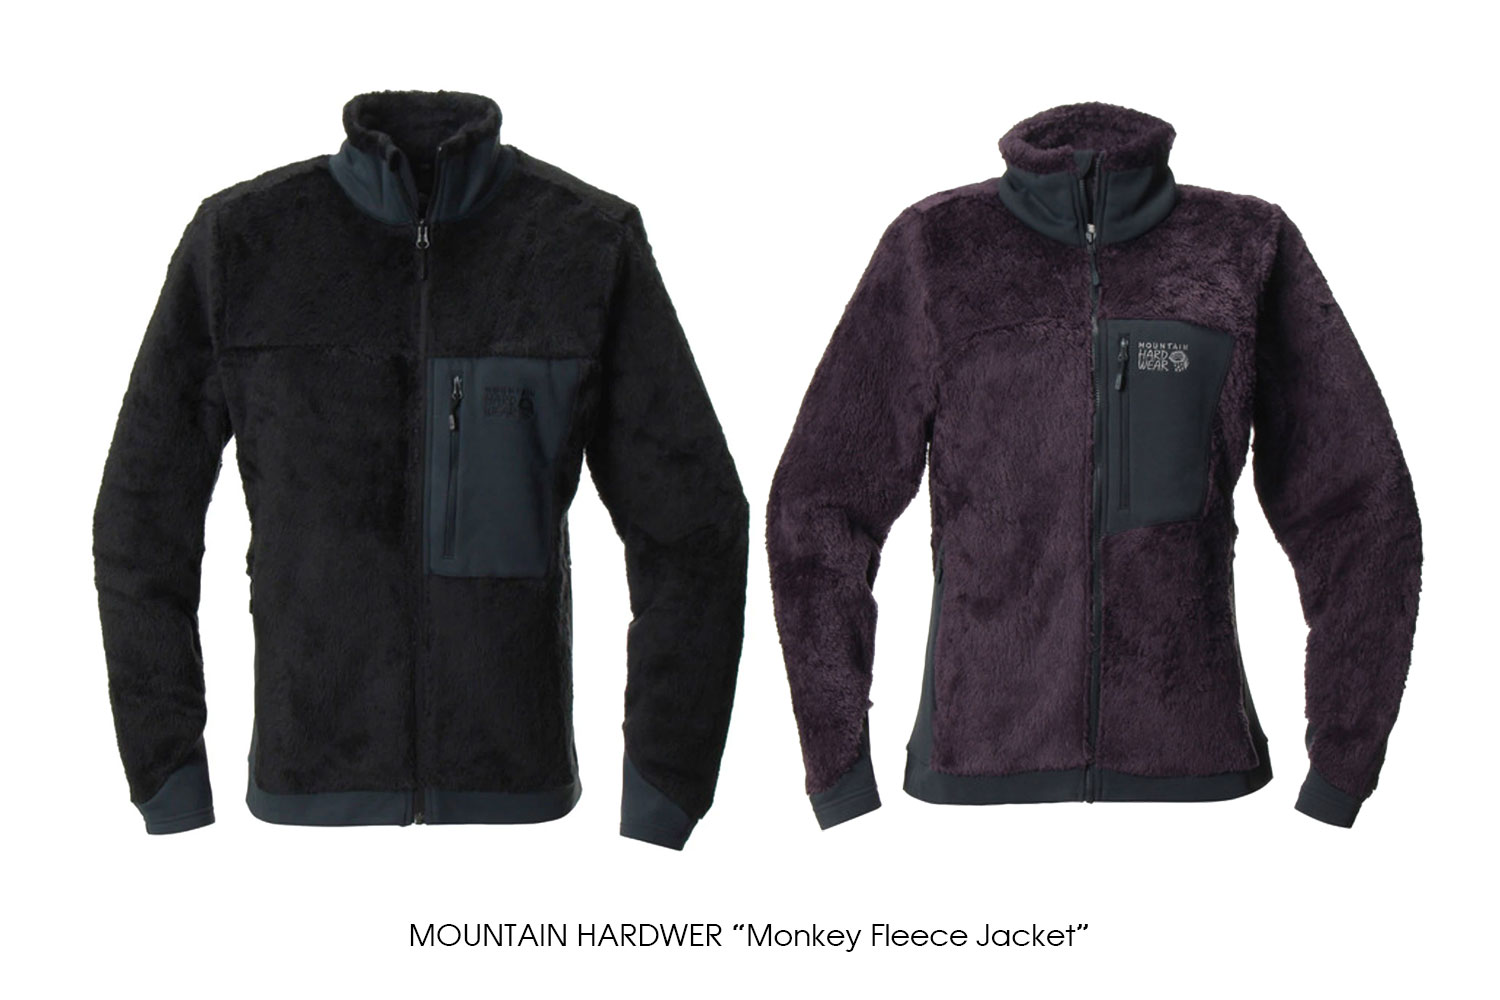 MOUNTAIN HARDWEAR "Monkey Fleece Jacket"